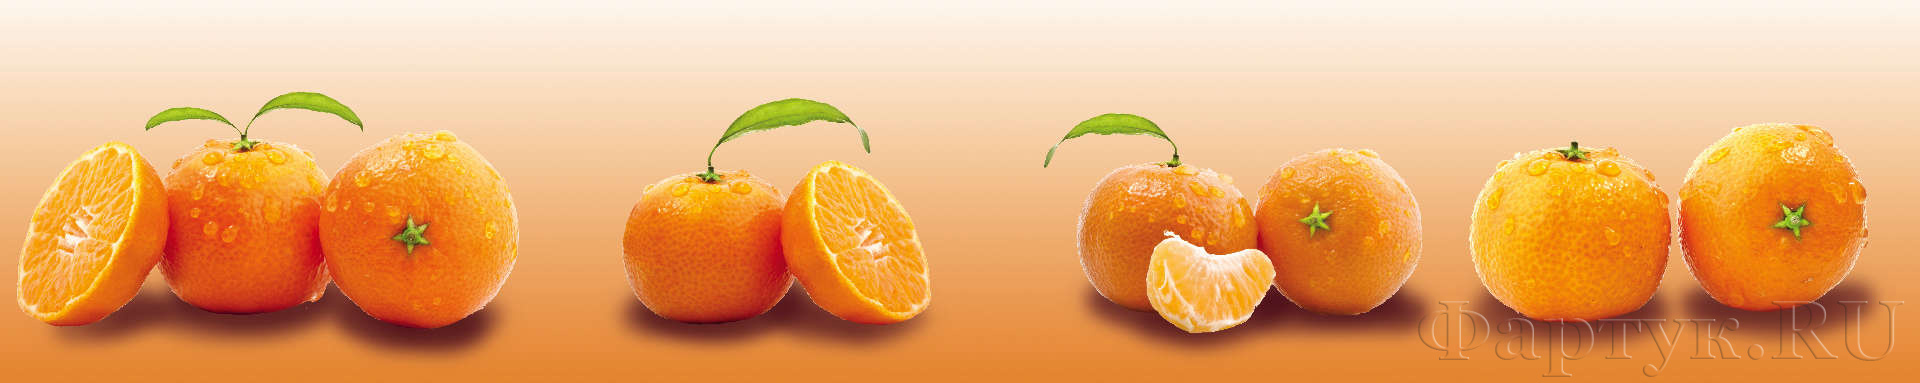 Сочные мандарины на оранжевом фоне